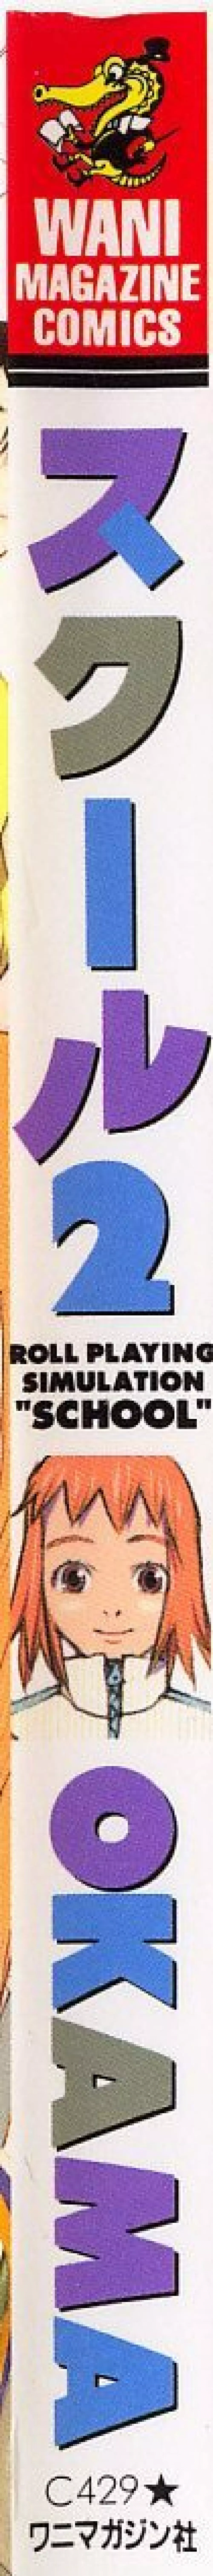 スクール 2 - Roll Playing Simulation 